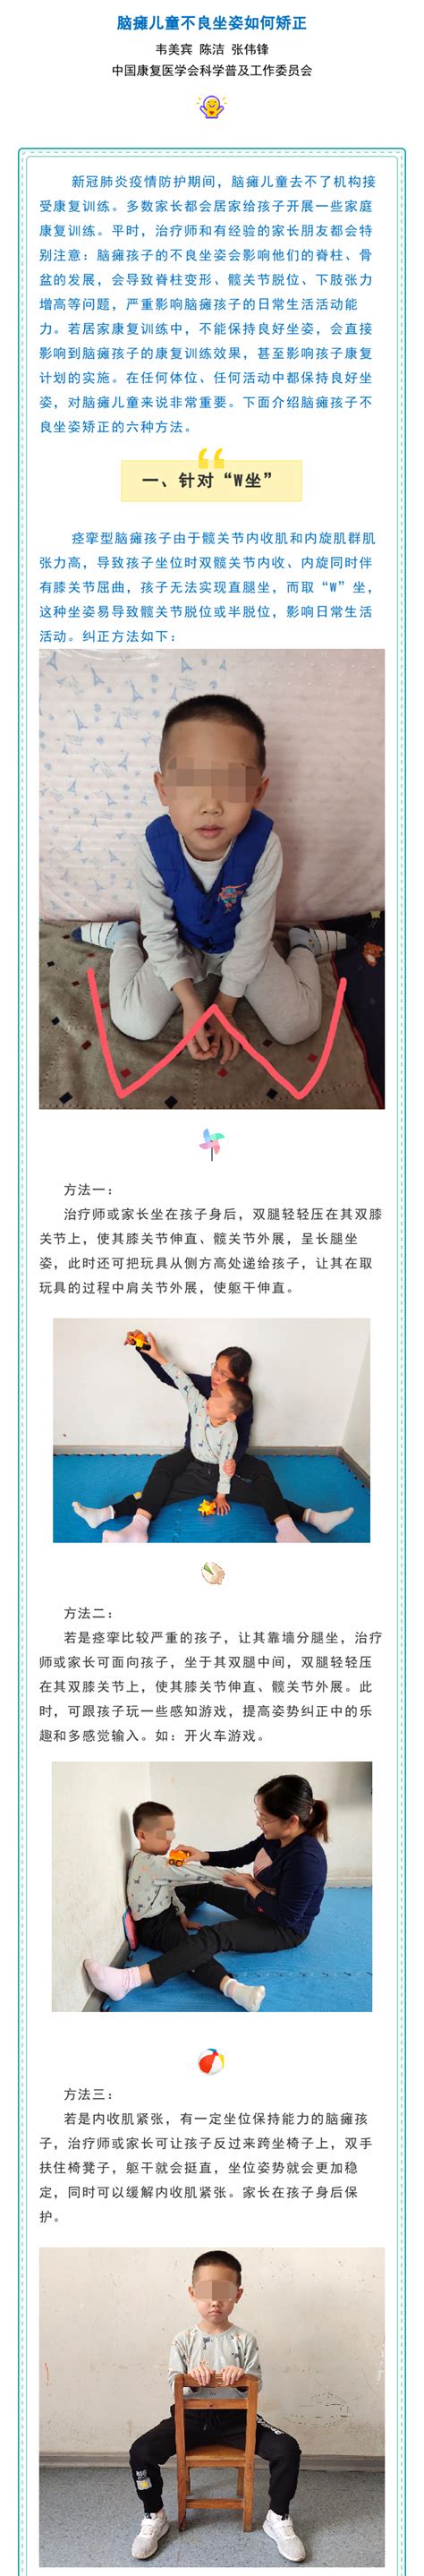 中国康复医学会 应急科普 【科普工作委员会】脑瘫儿童不良坐姿如何矫正